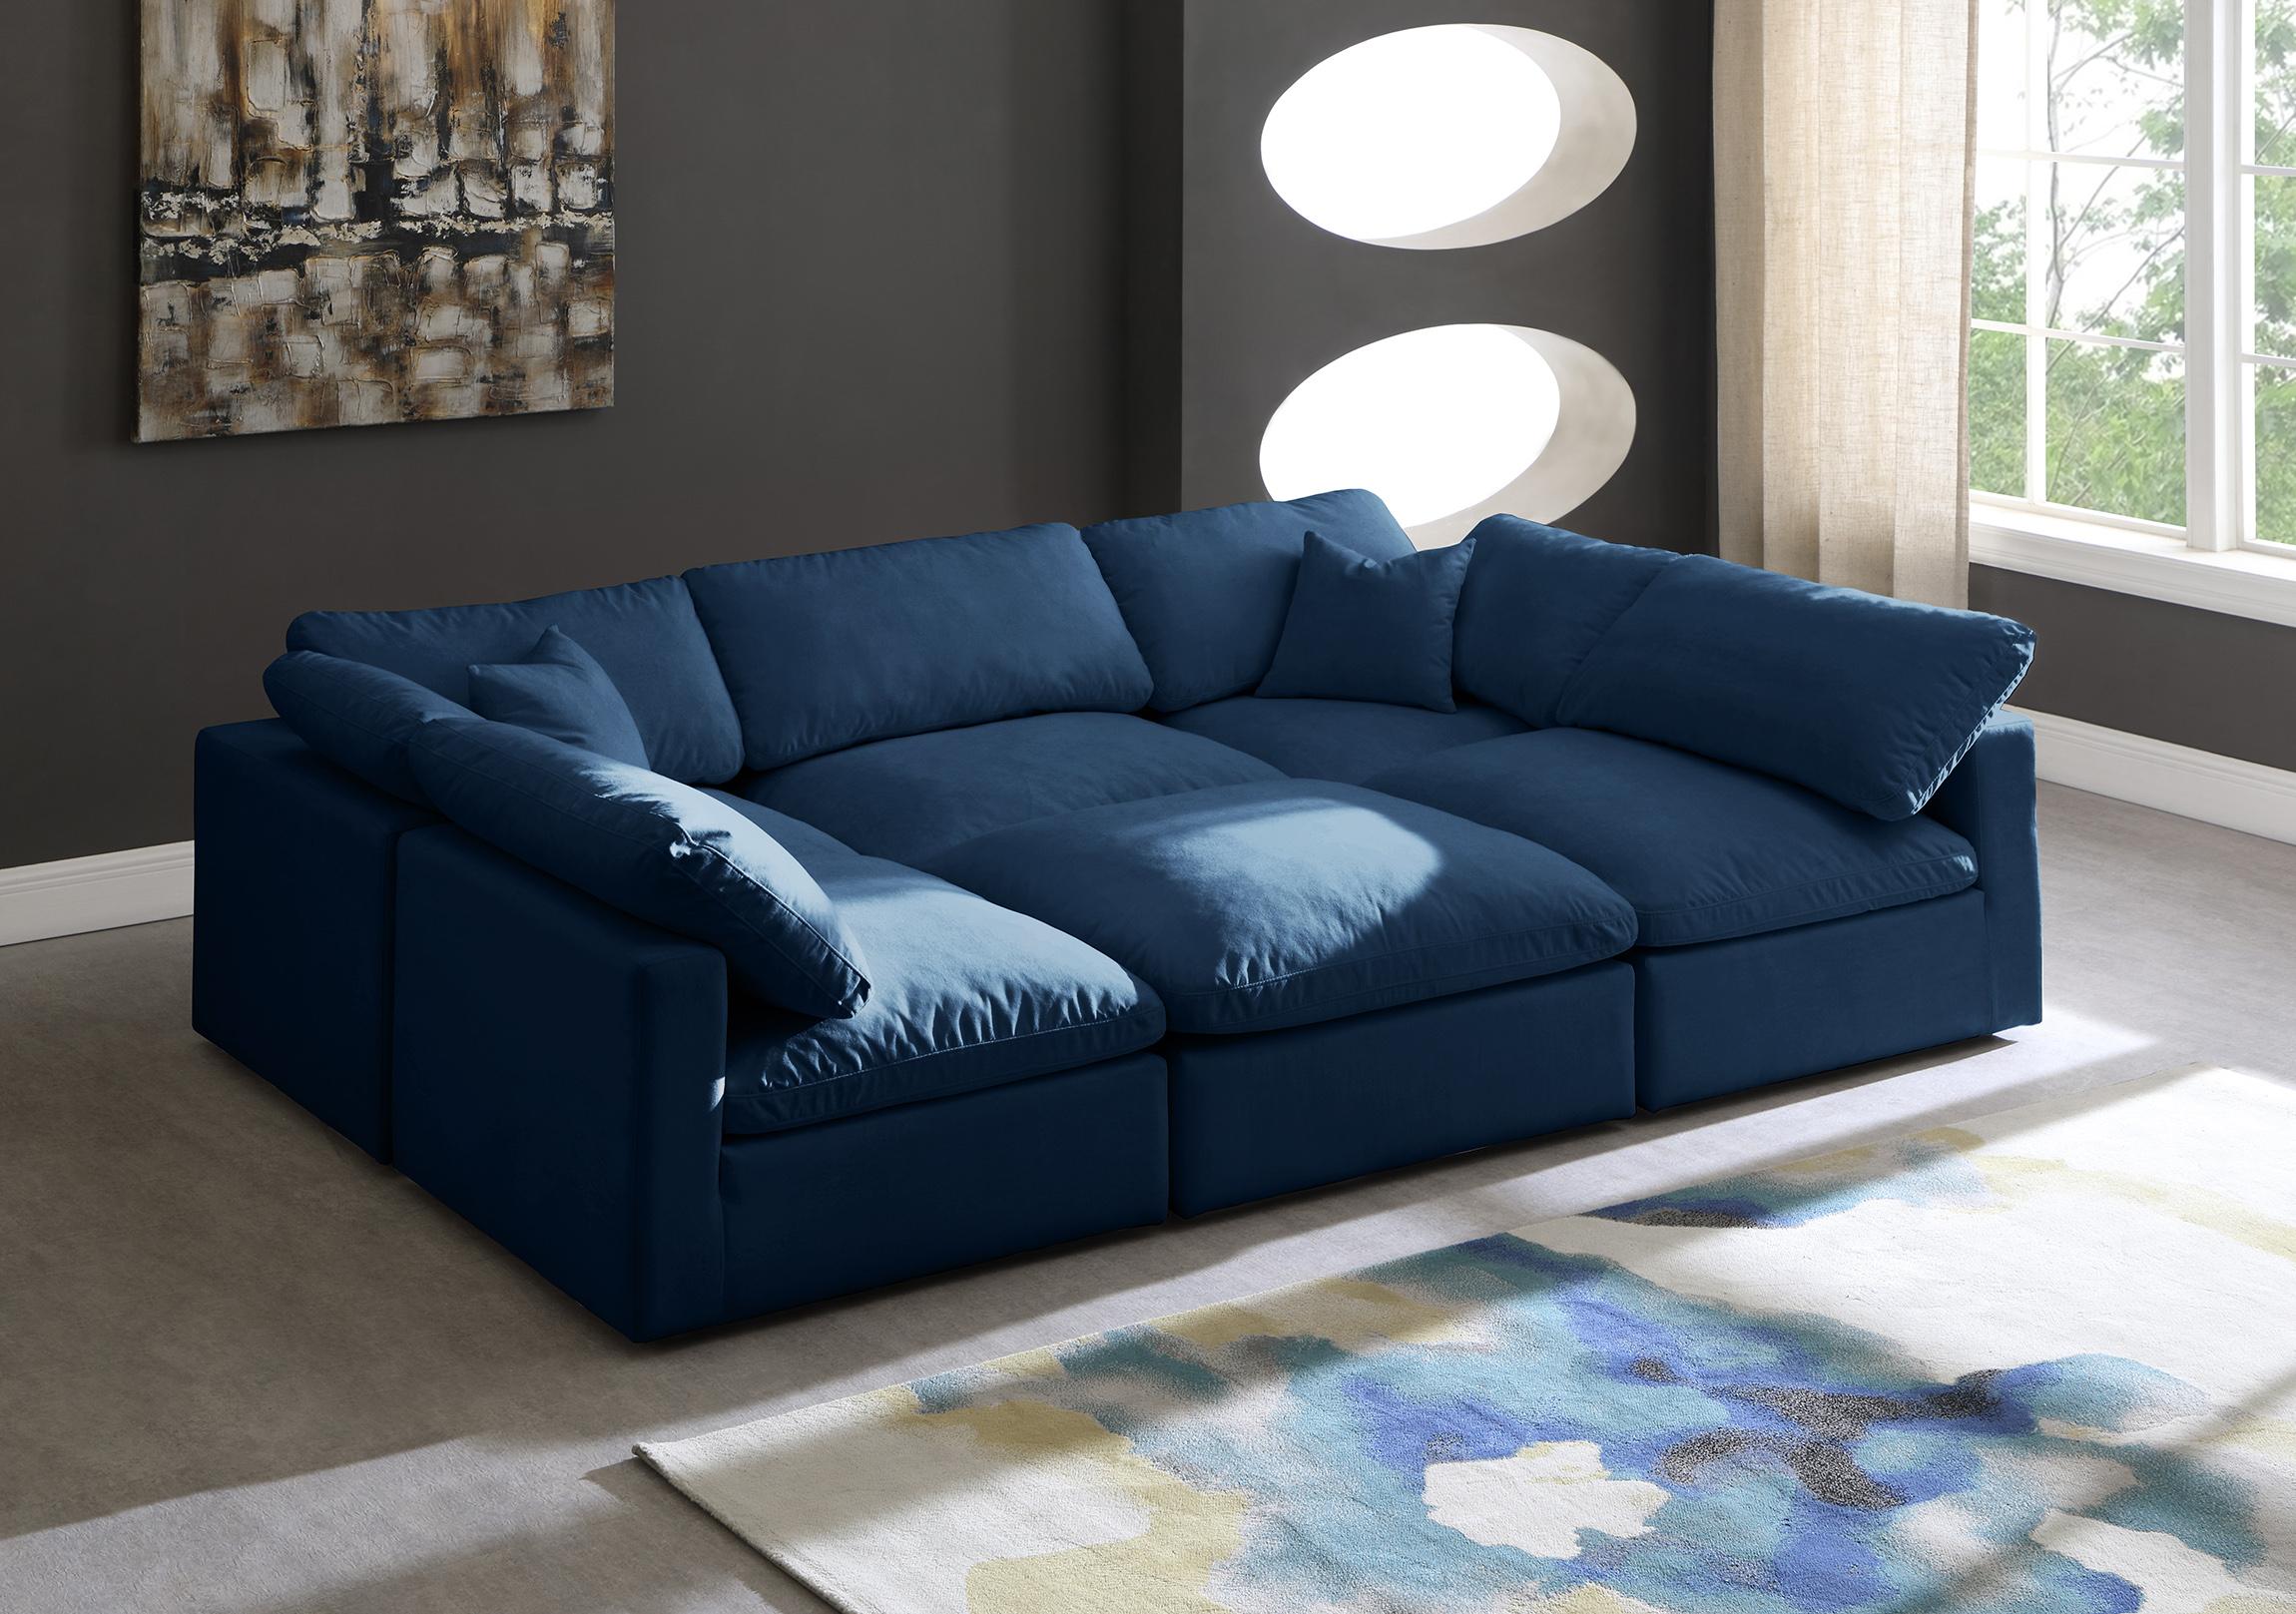 

    
Meridian Furniture 602Navy-Sec6C Modular Sectional Sofa Navy 602Navy-Sec6C
